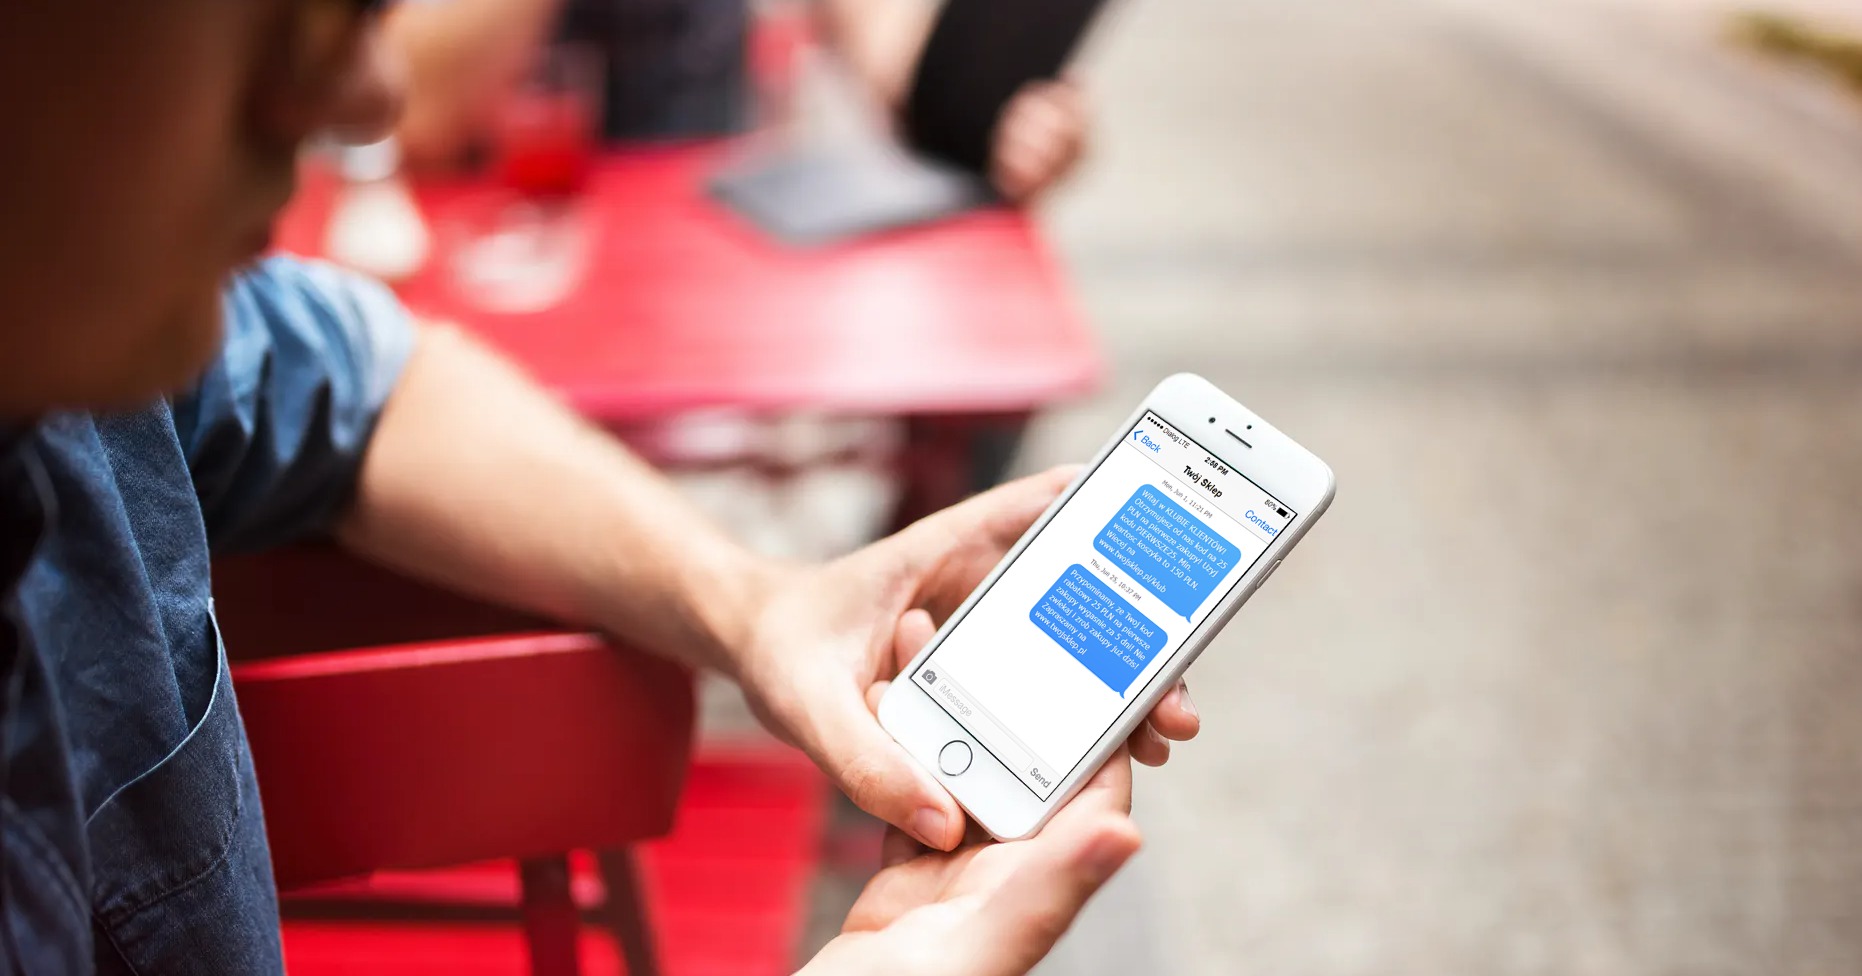 #HowTo: Jak włączyć marketing SMS do strategii Twojego sklepu internetowego? Trzy proste wiadomości